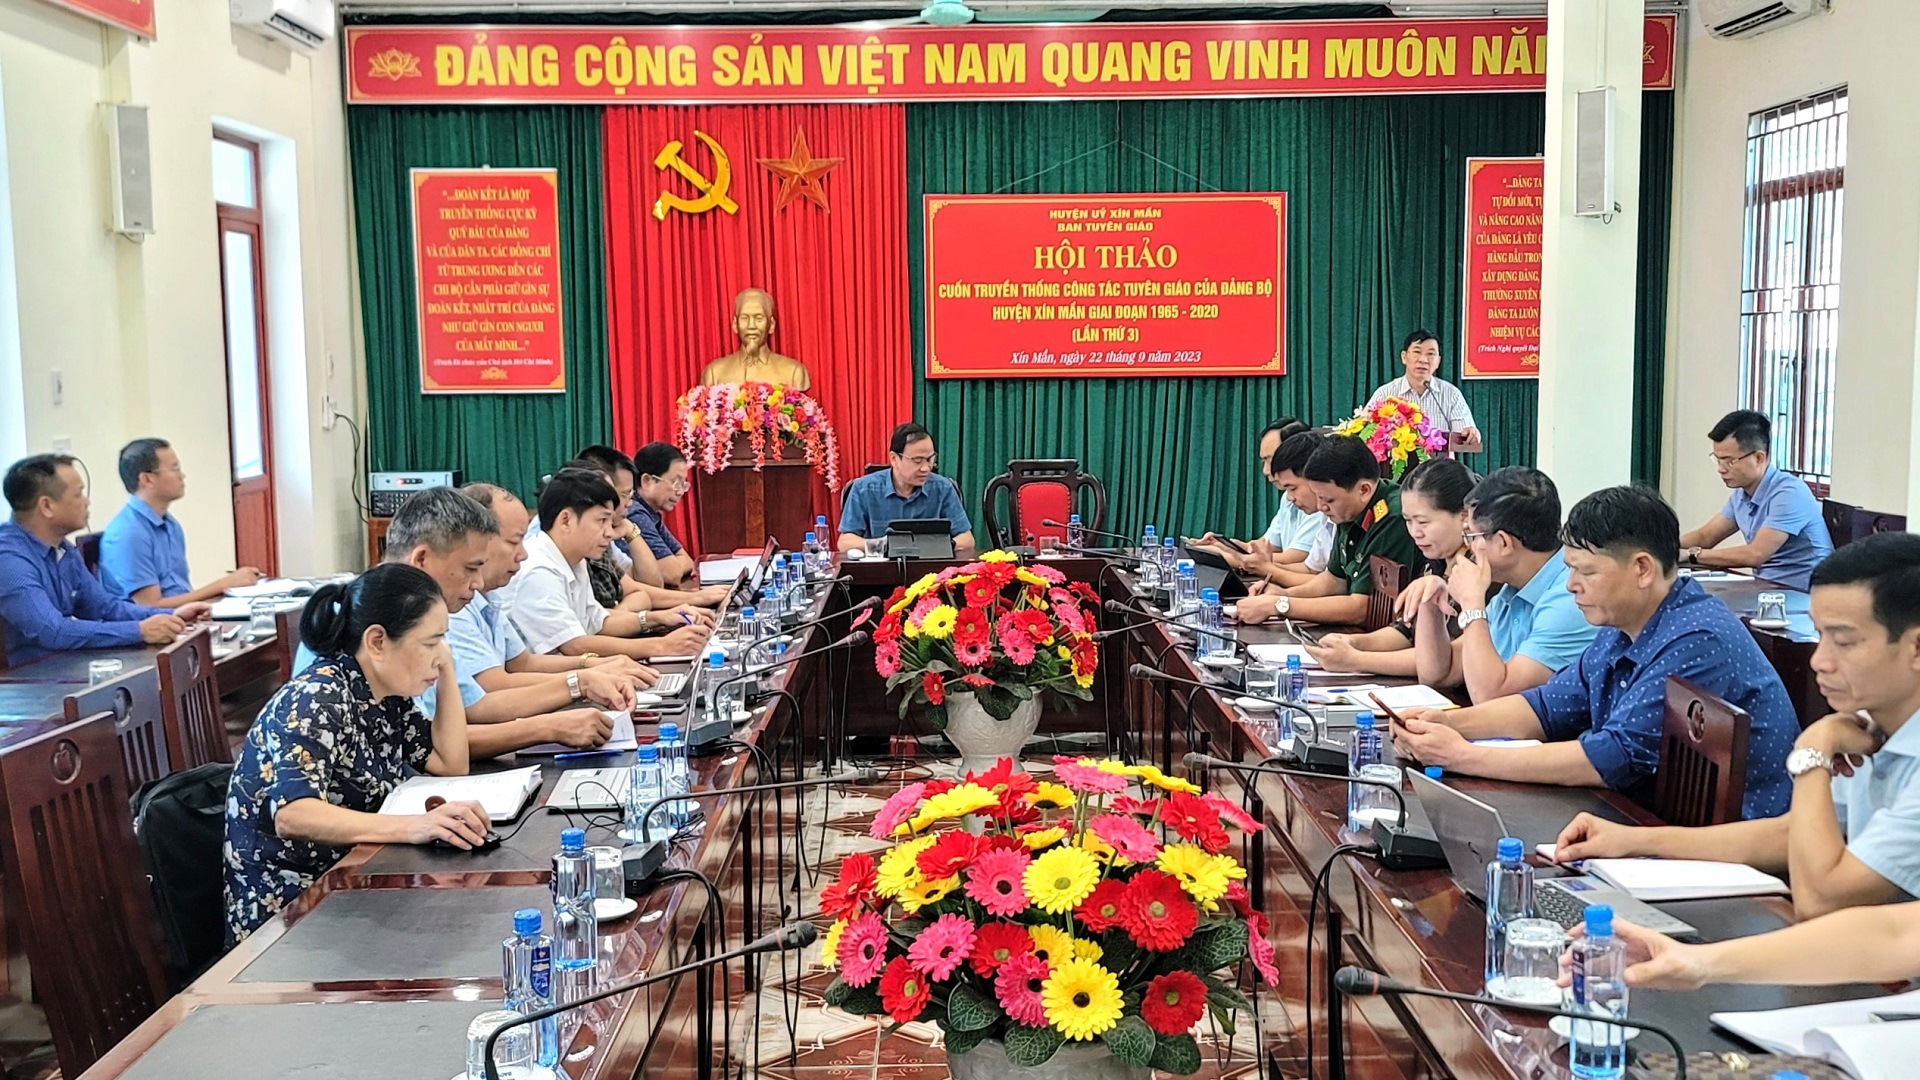 Hội thảo Cuốn truyền thống công tác Tuyên giáo của Đảng bộ huyện Xín Mần giai đoạn 1965-2020